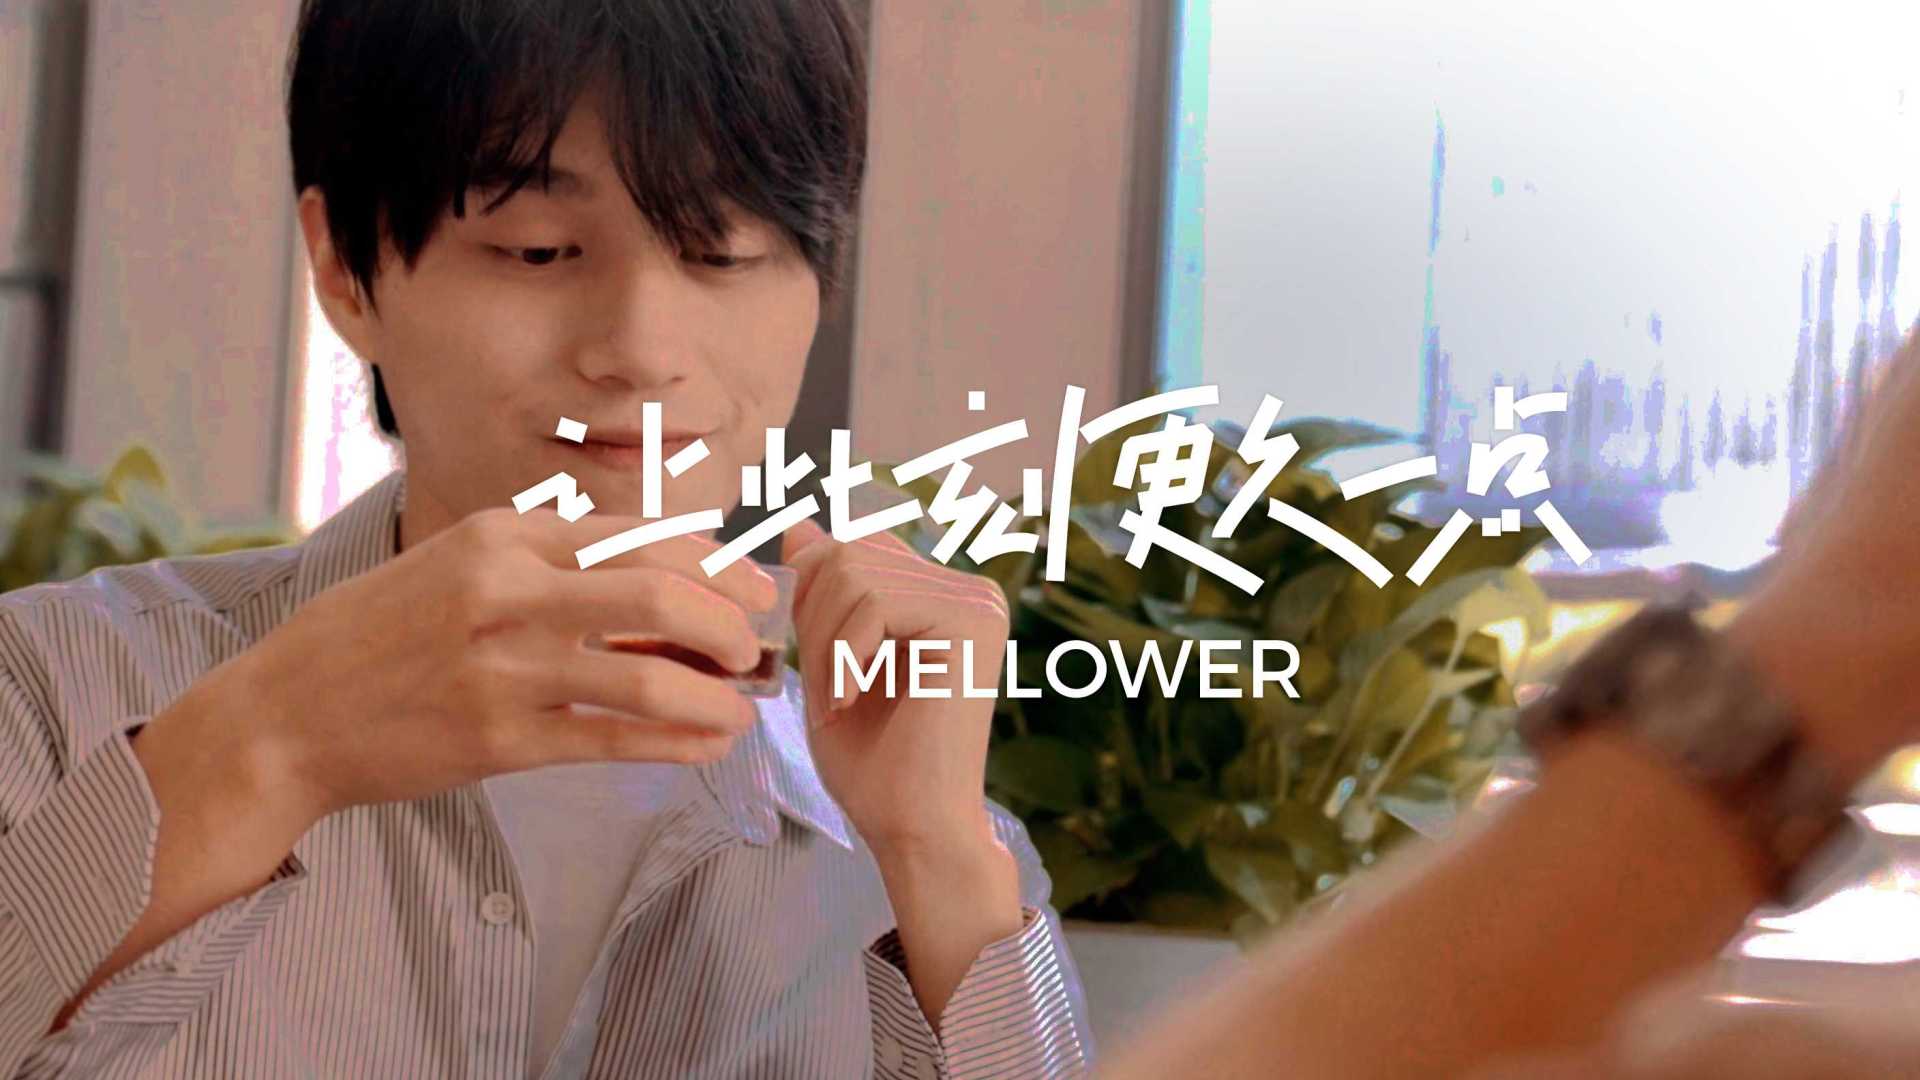 Mellower Coffee & 盒马